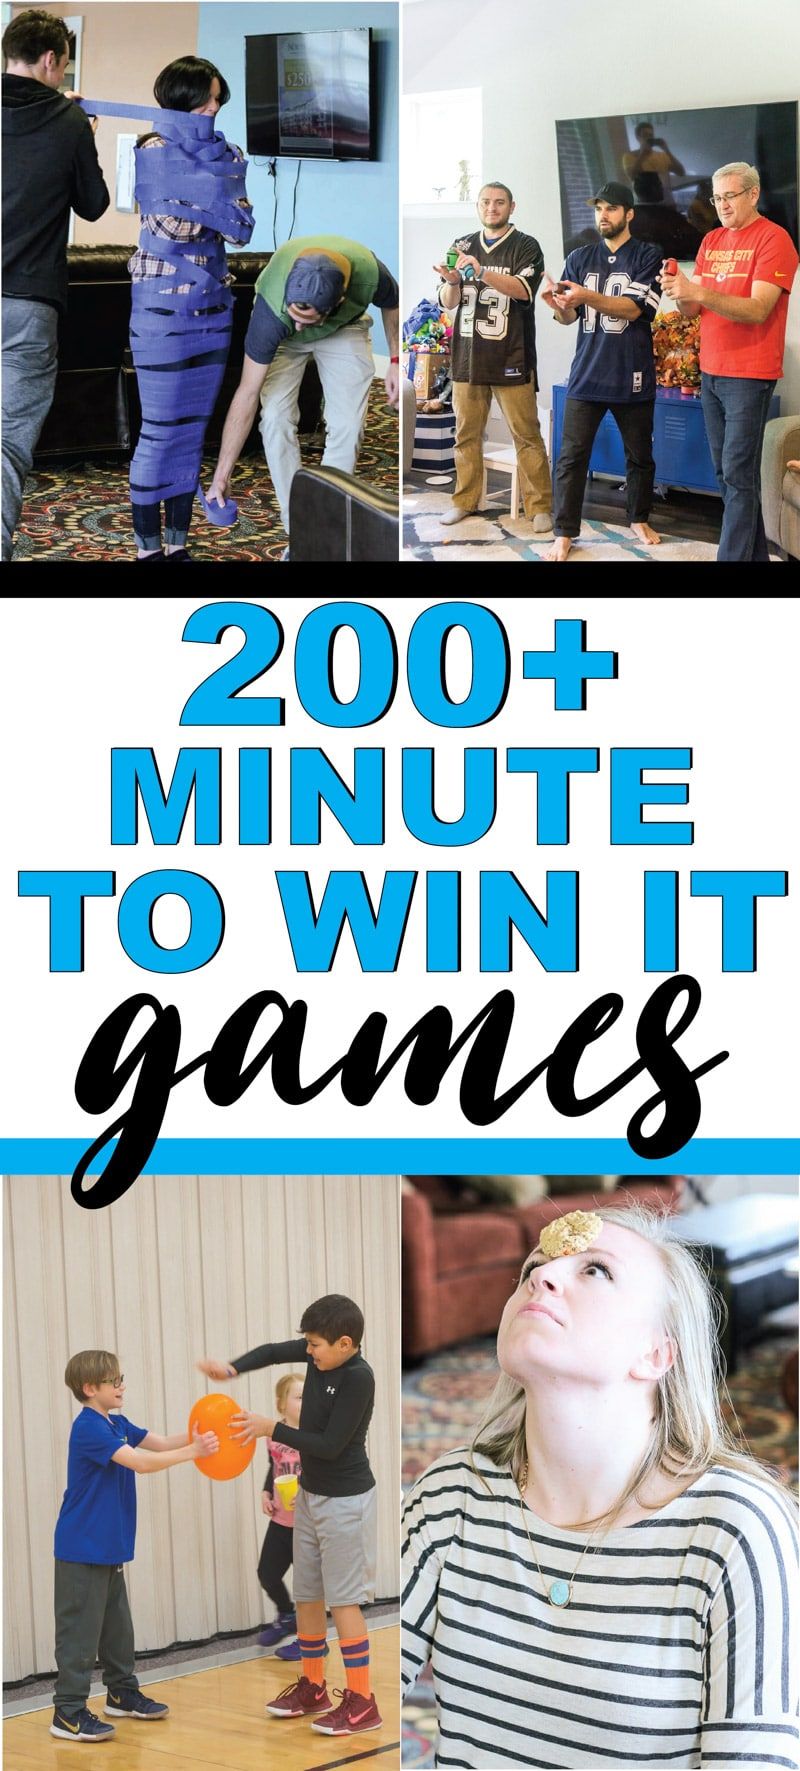 Najlepsza minuta na wygranie gier dla dzieci, nastolatków, a nawet dorosłych! Ponad 200 zabawnych gier, które są idealne na zjazd rodzinny, do szkoły, na szkolne imprezy i nie tylko! Proste gry, fajne gry zespołowe i nie tylko!